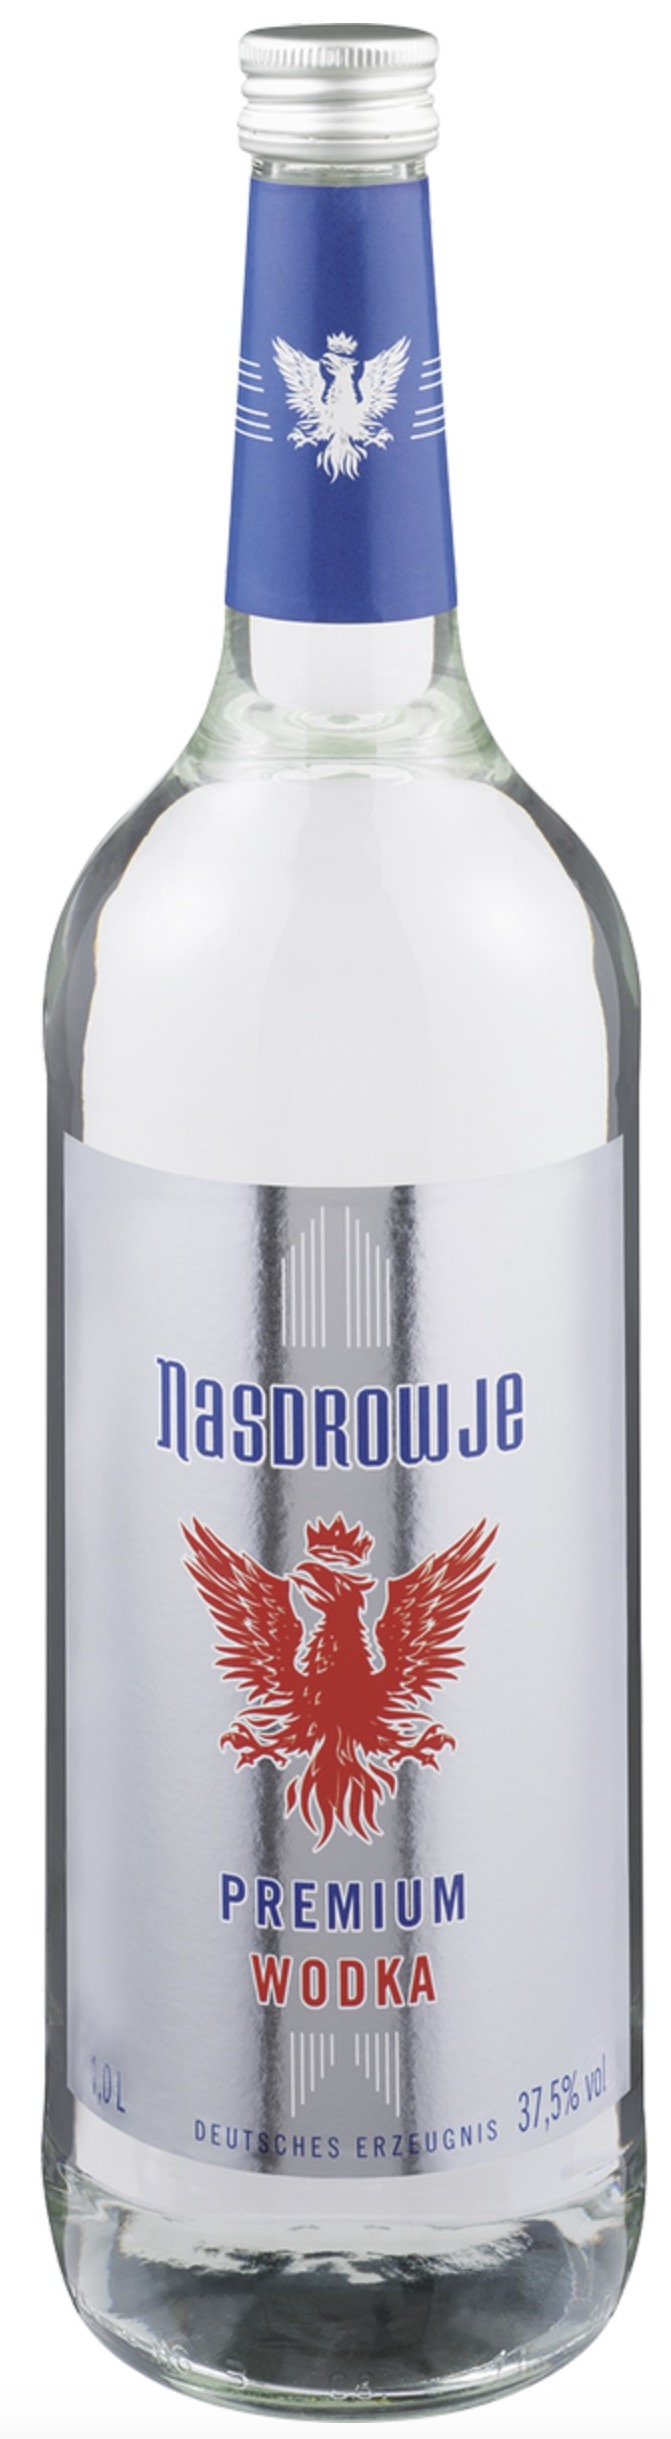 Nasdrowje Wodka 37,5% vol. 1,0L